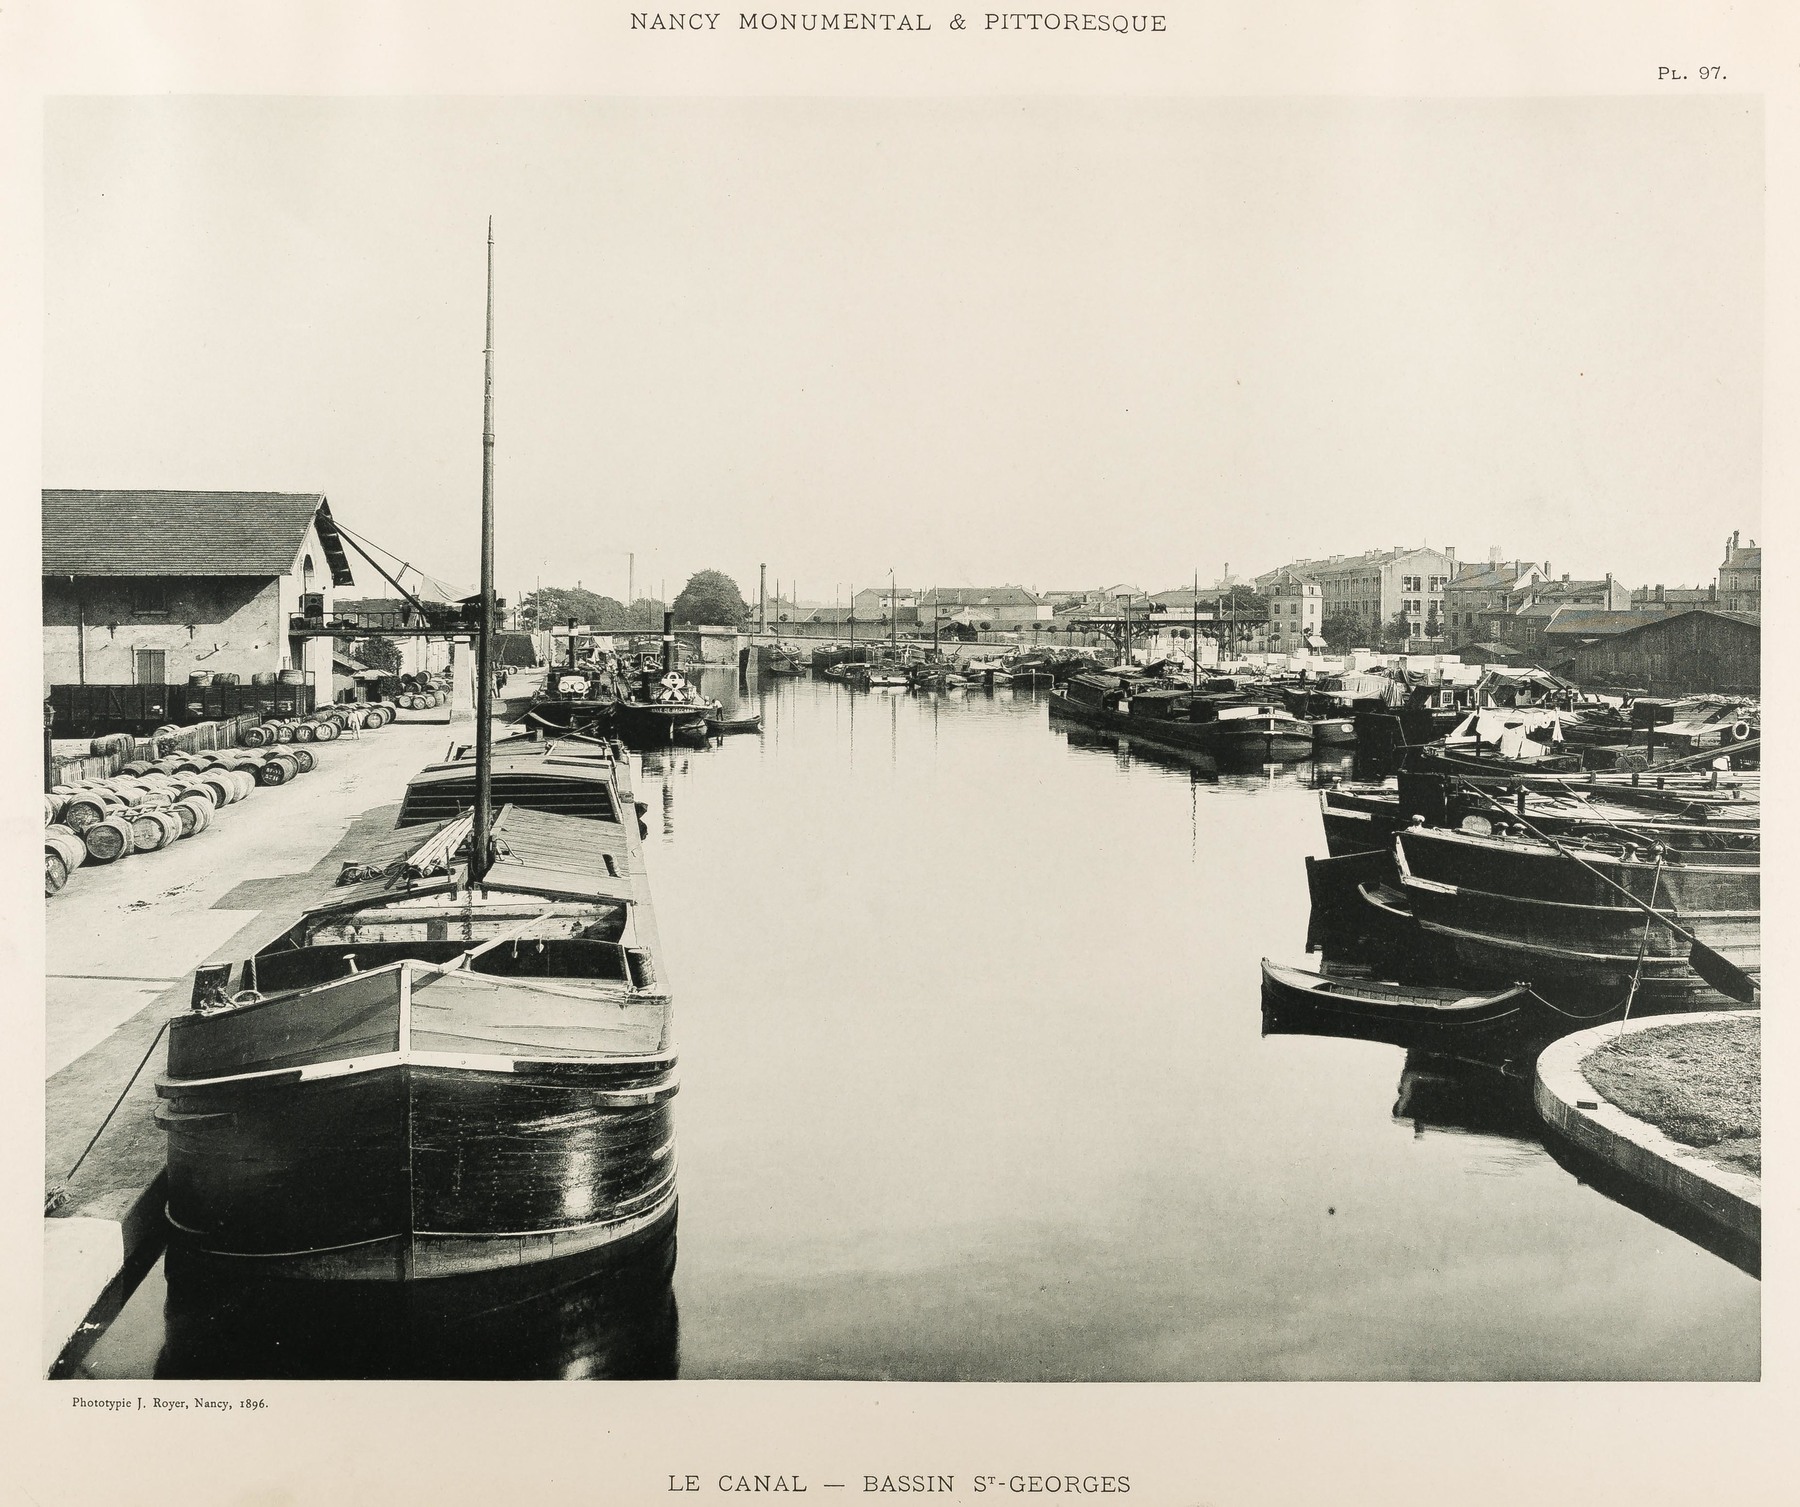 Contenu du Le canal : bassin St-Georges